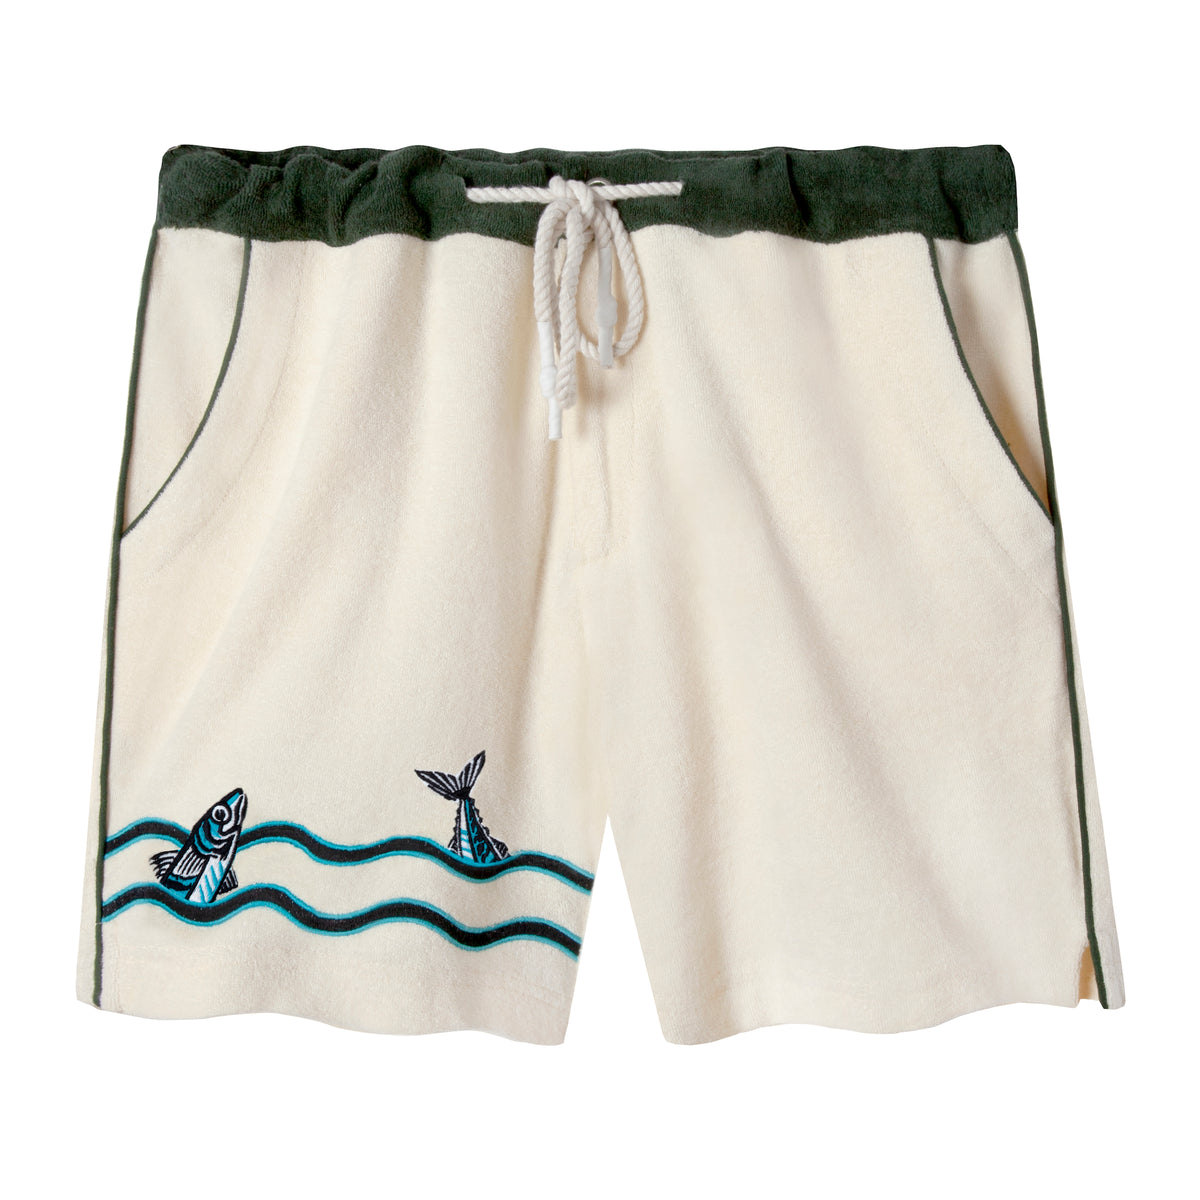 The Angler' Cabana Shorts